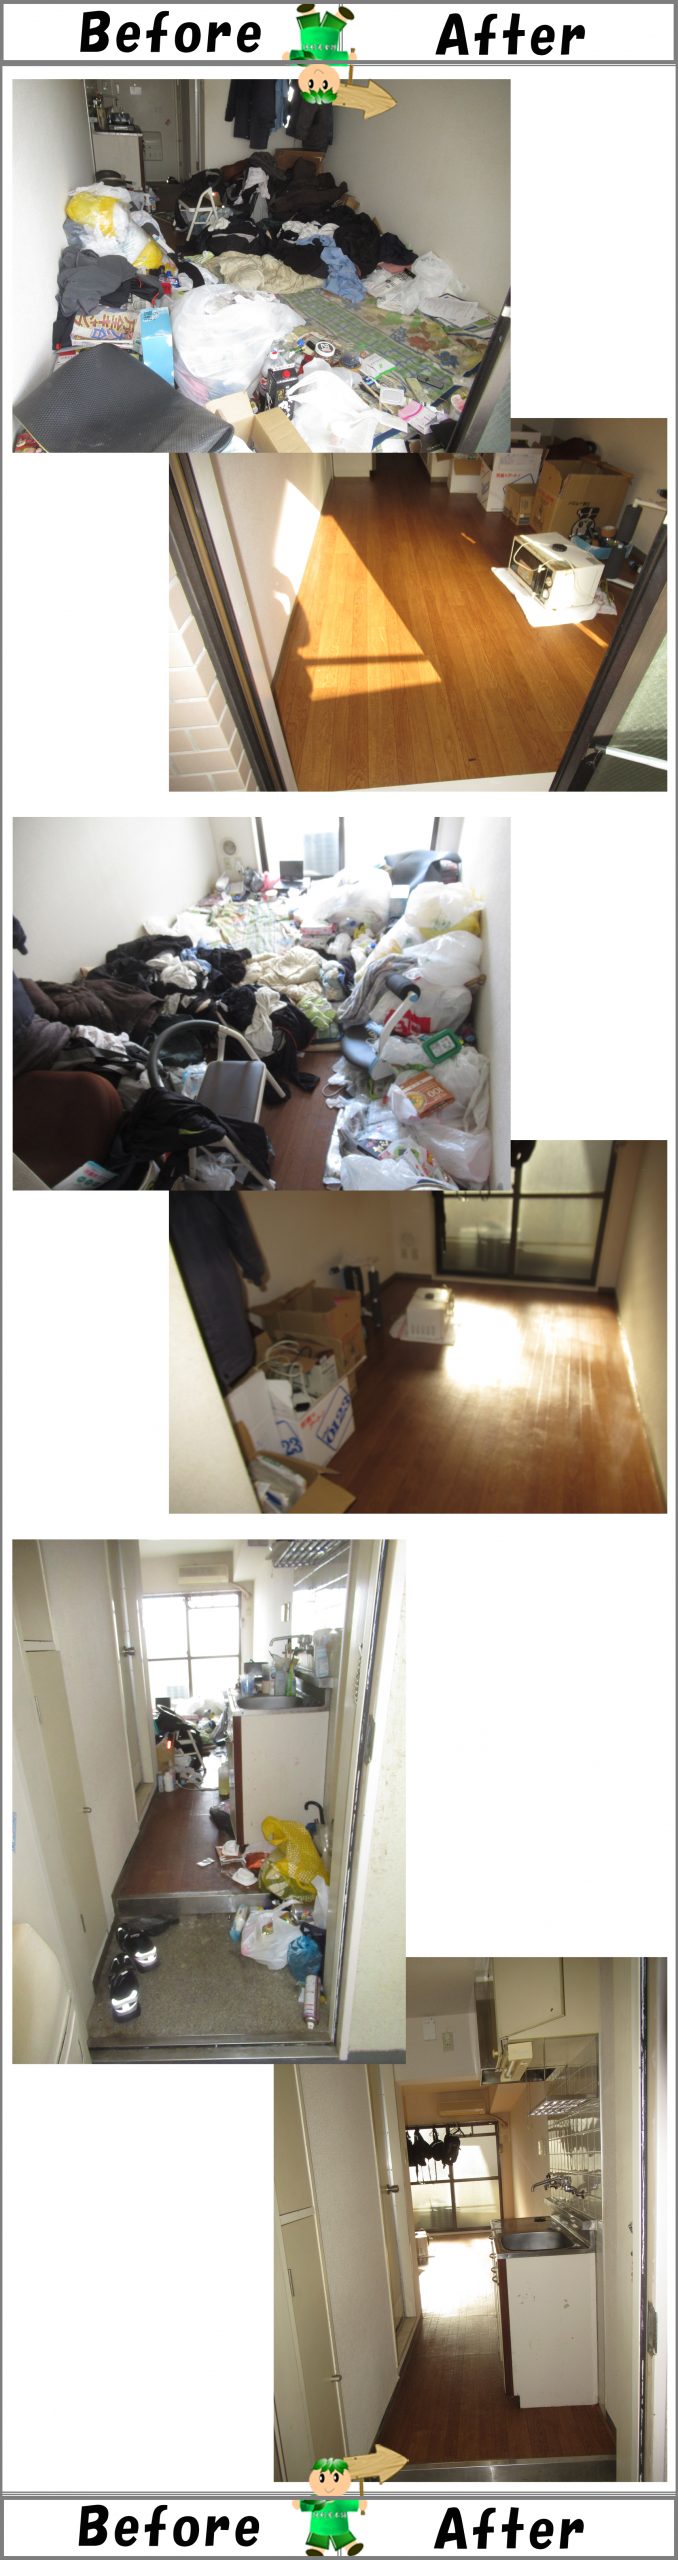 【作業事例ご紹介】不用品・モノが散らかったお部屋の片付け、清掃作業